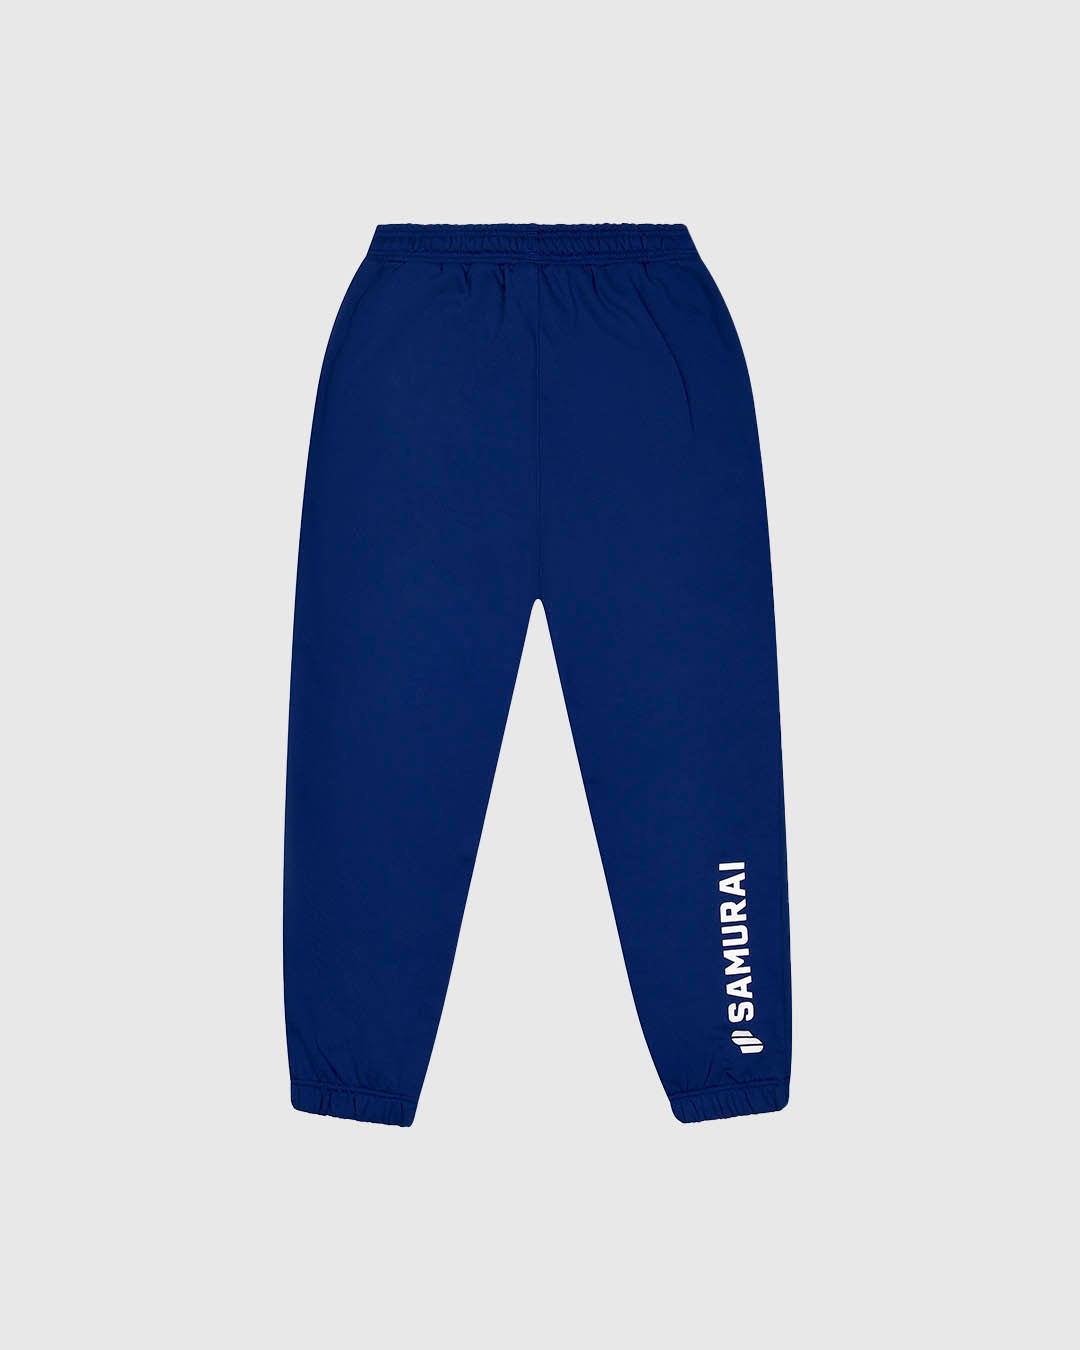 PFC: 003-3 - Women's Sweatpants - Royal Blue